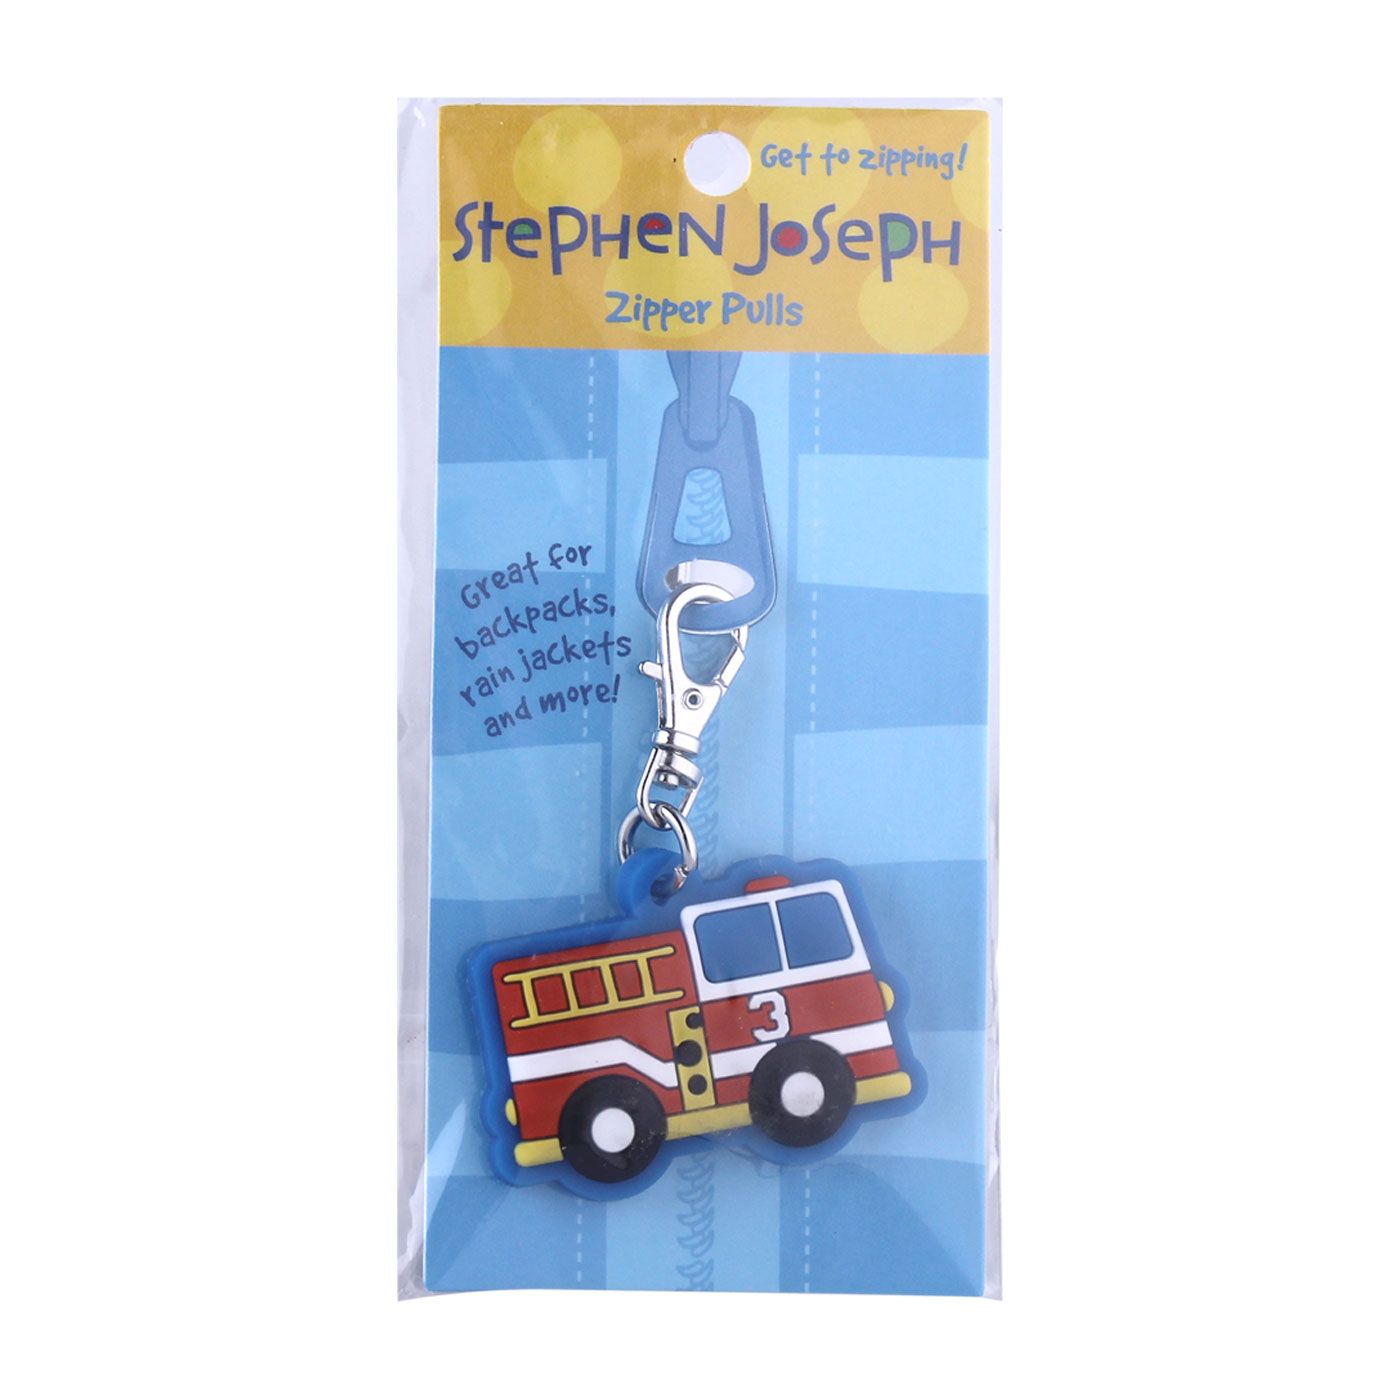 Stephen Joseph Zipper Pull Firetruck - 2